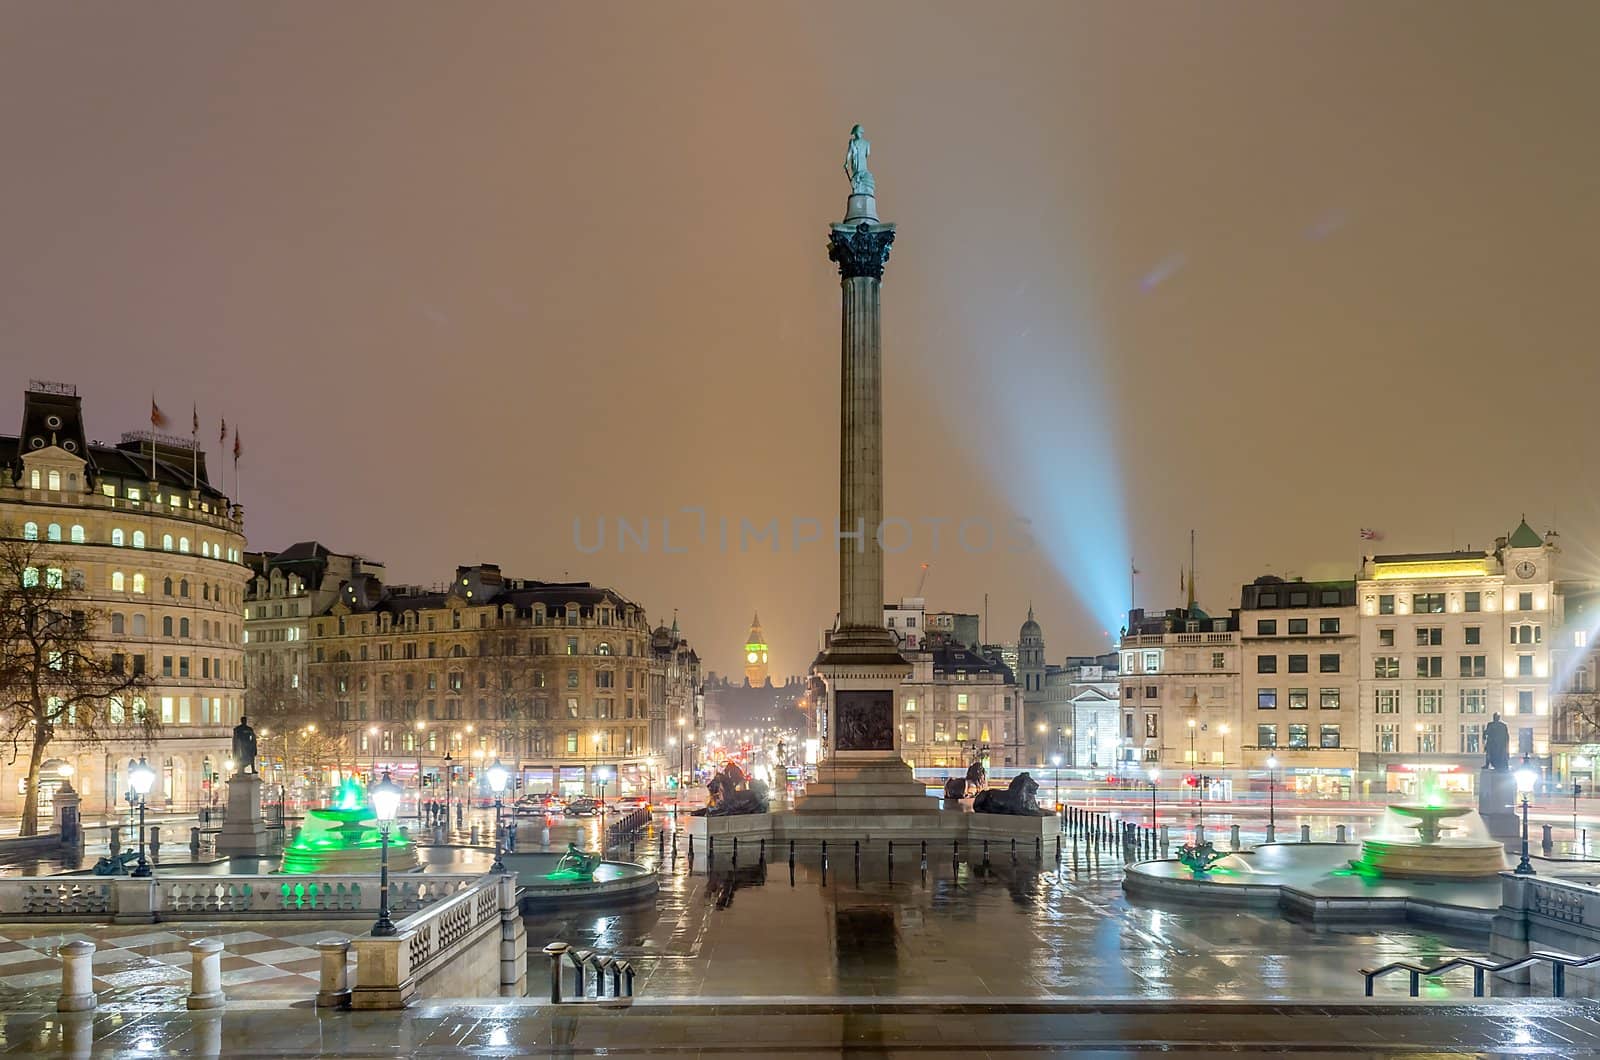 Trafalgar Square at night by marcorubino